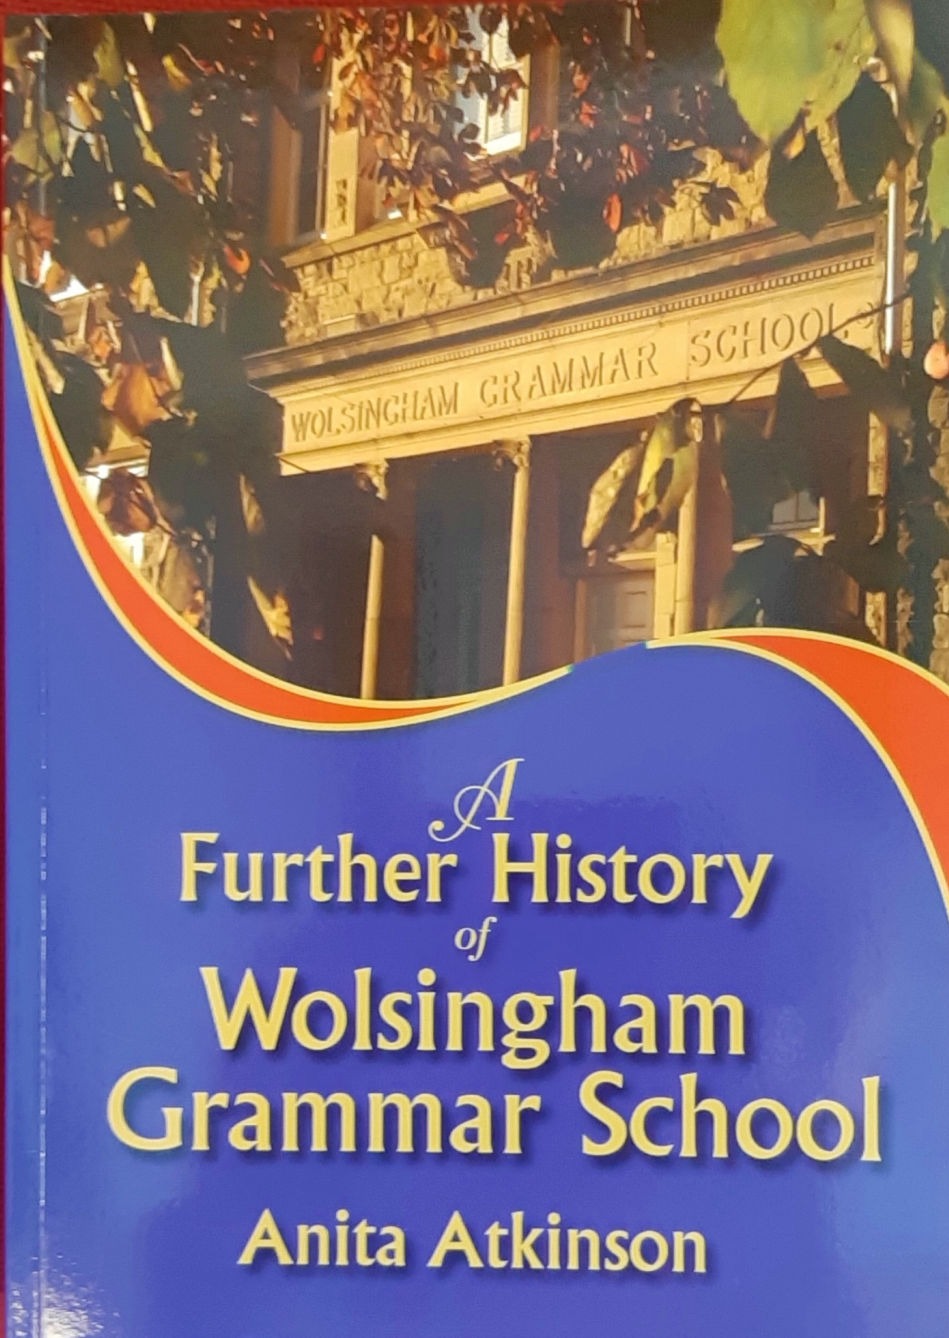 A Further History of Wolsingham Grammar School